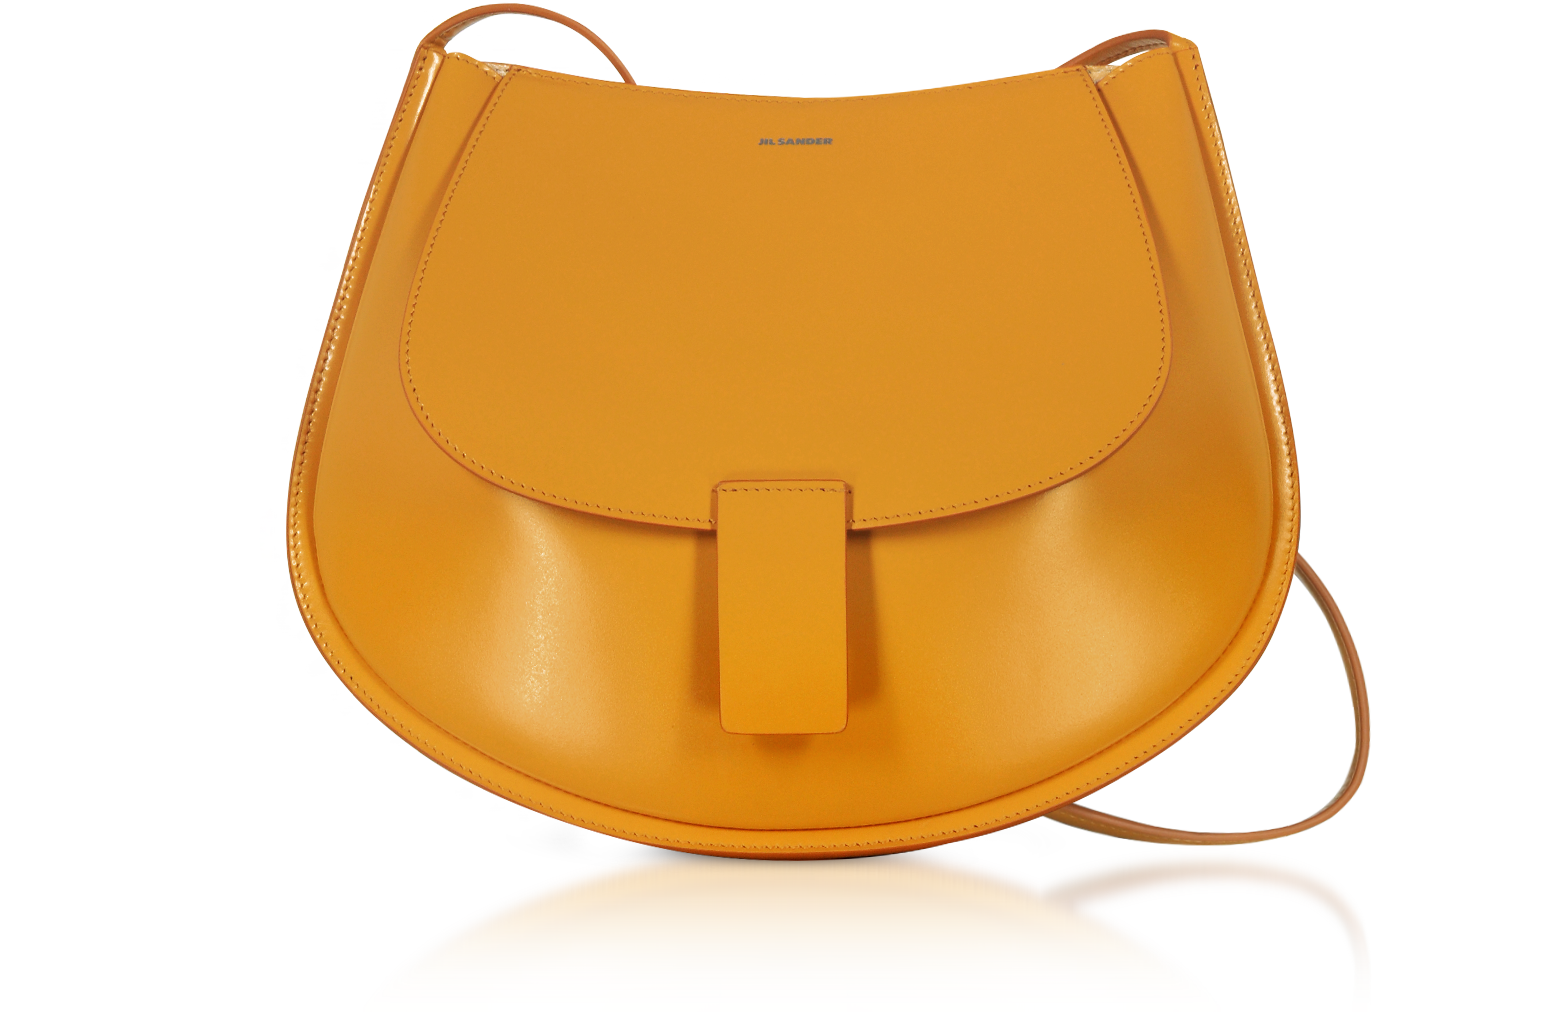 Small Leather Crescent Shoulder Bag